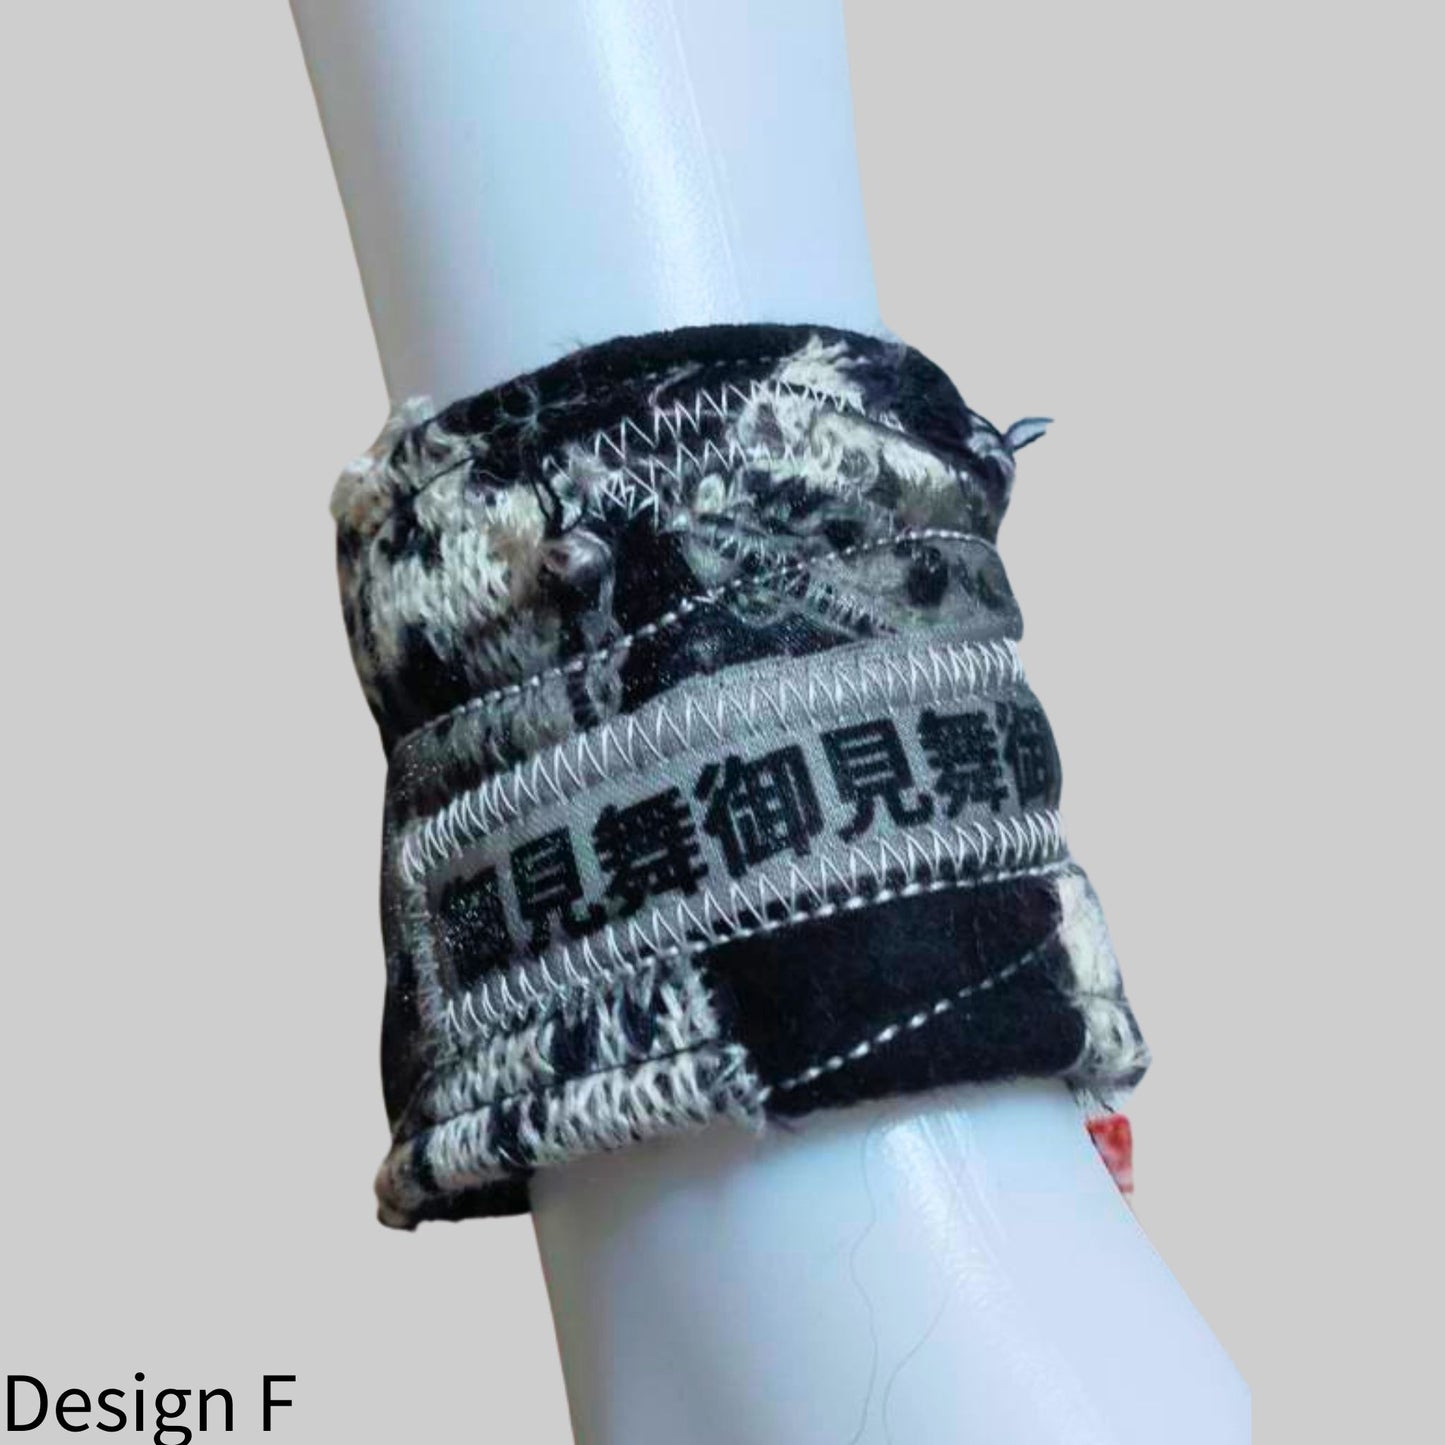 Armband mit japanischen Schriftzeichen aus Strick und Wolle